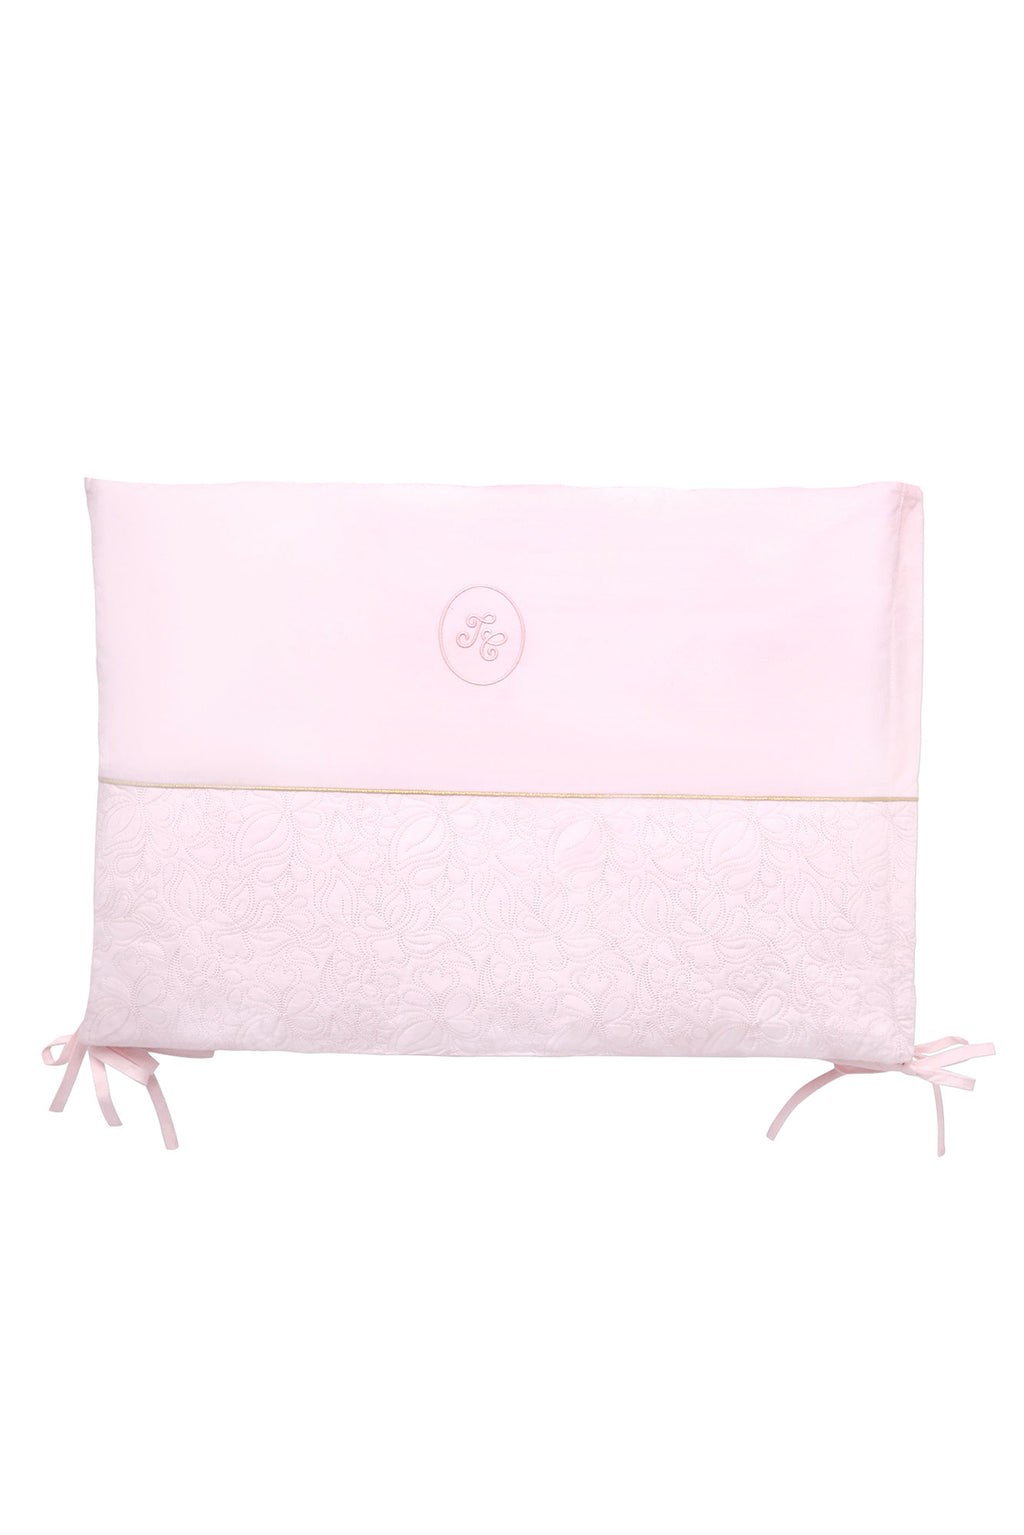 Paraurti letto - Delicatura Rosa pallido